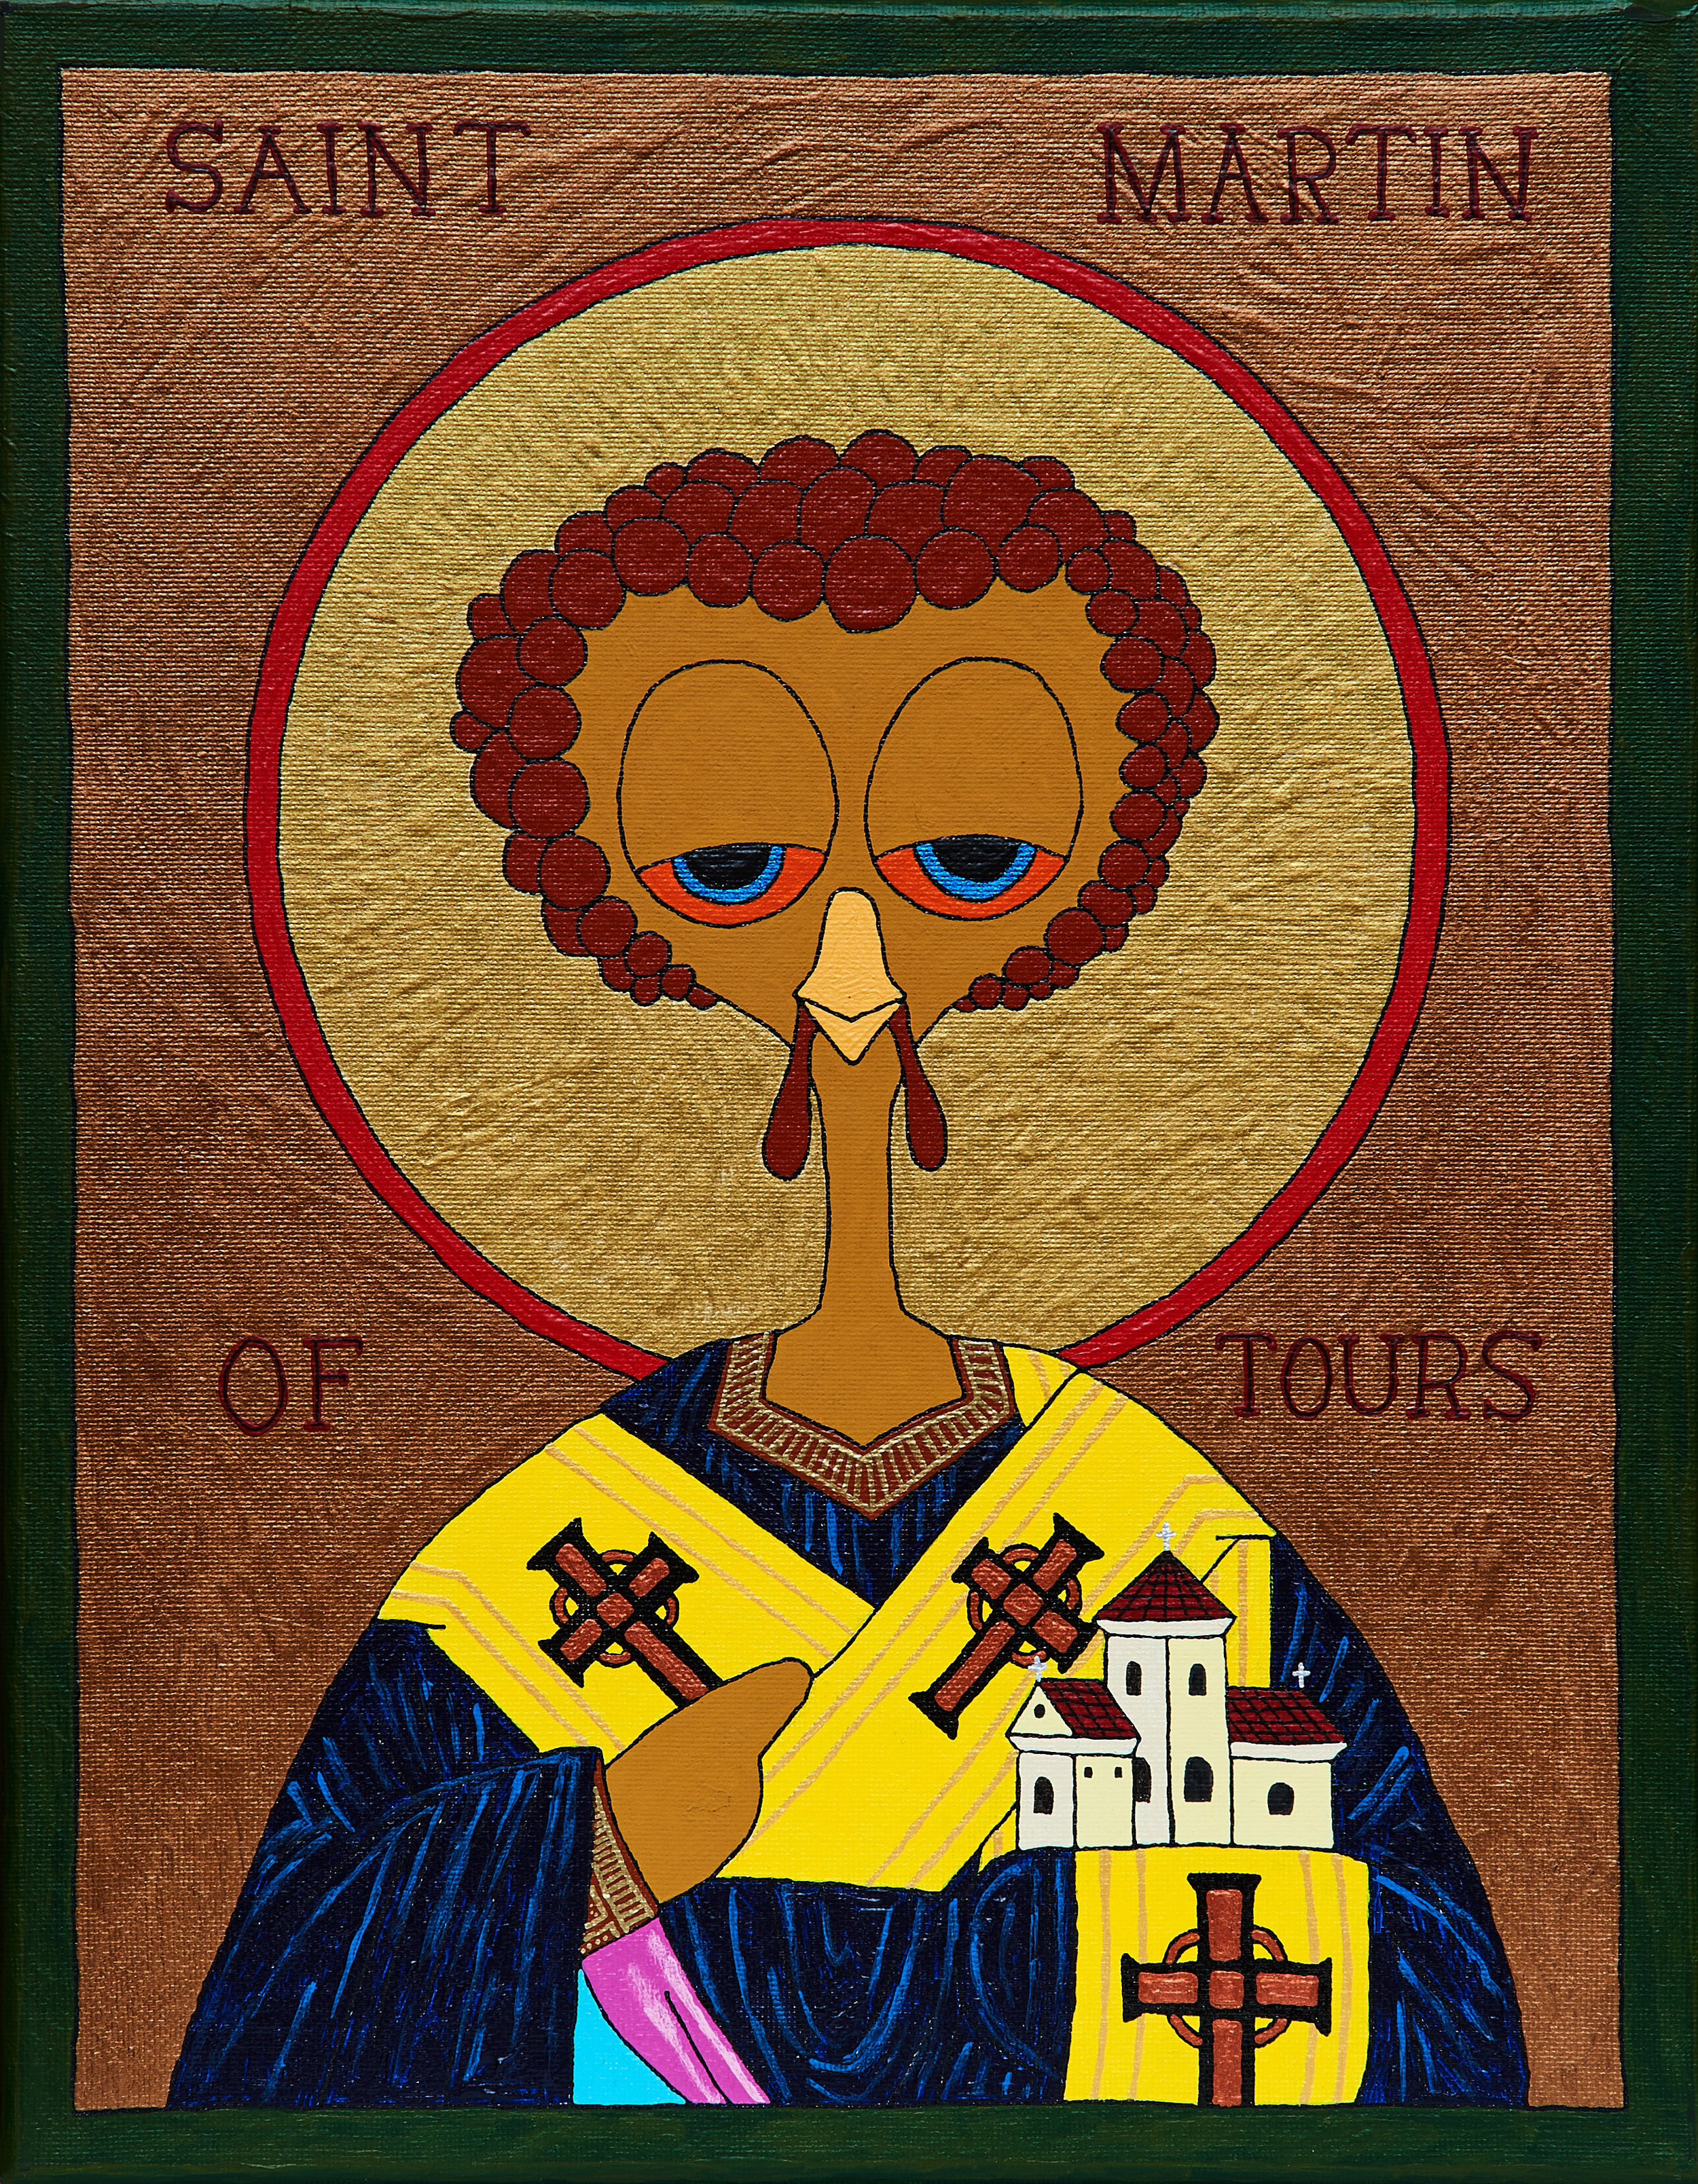 Saint Martin of Tours